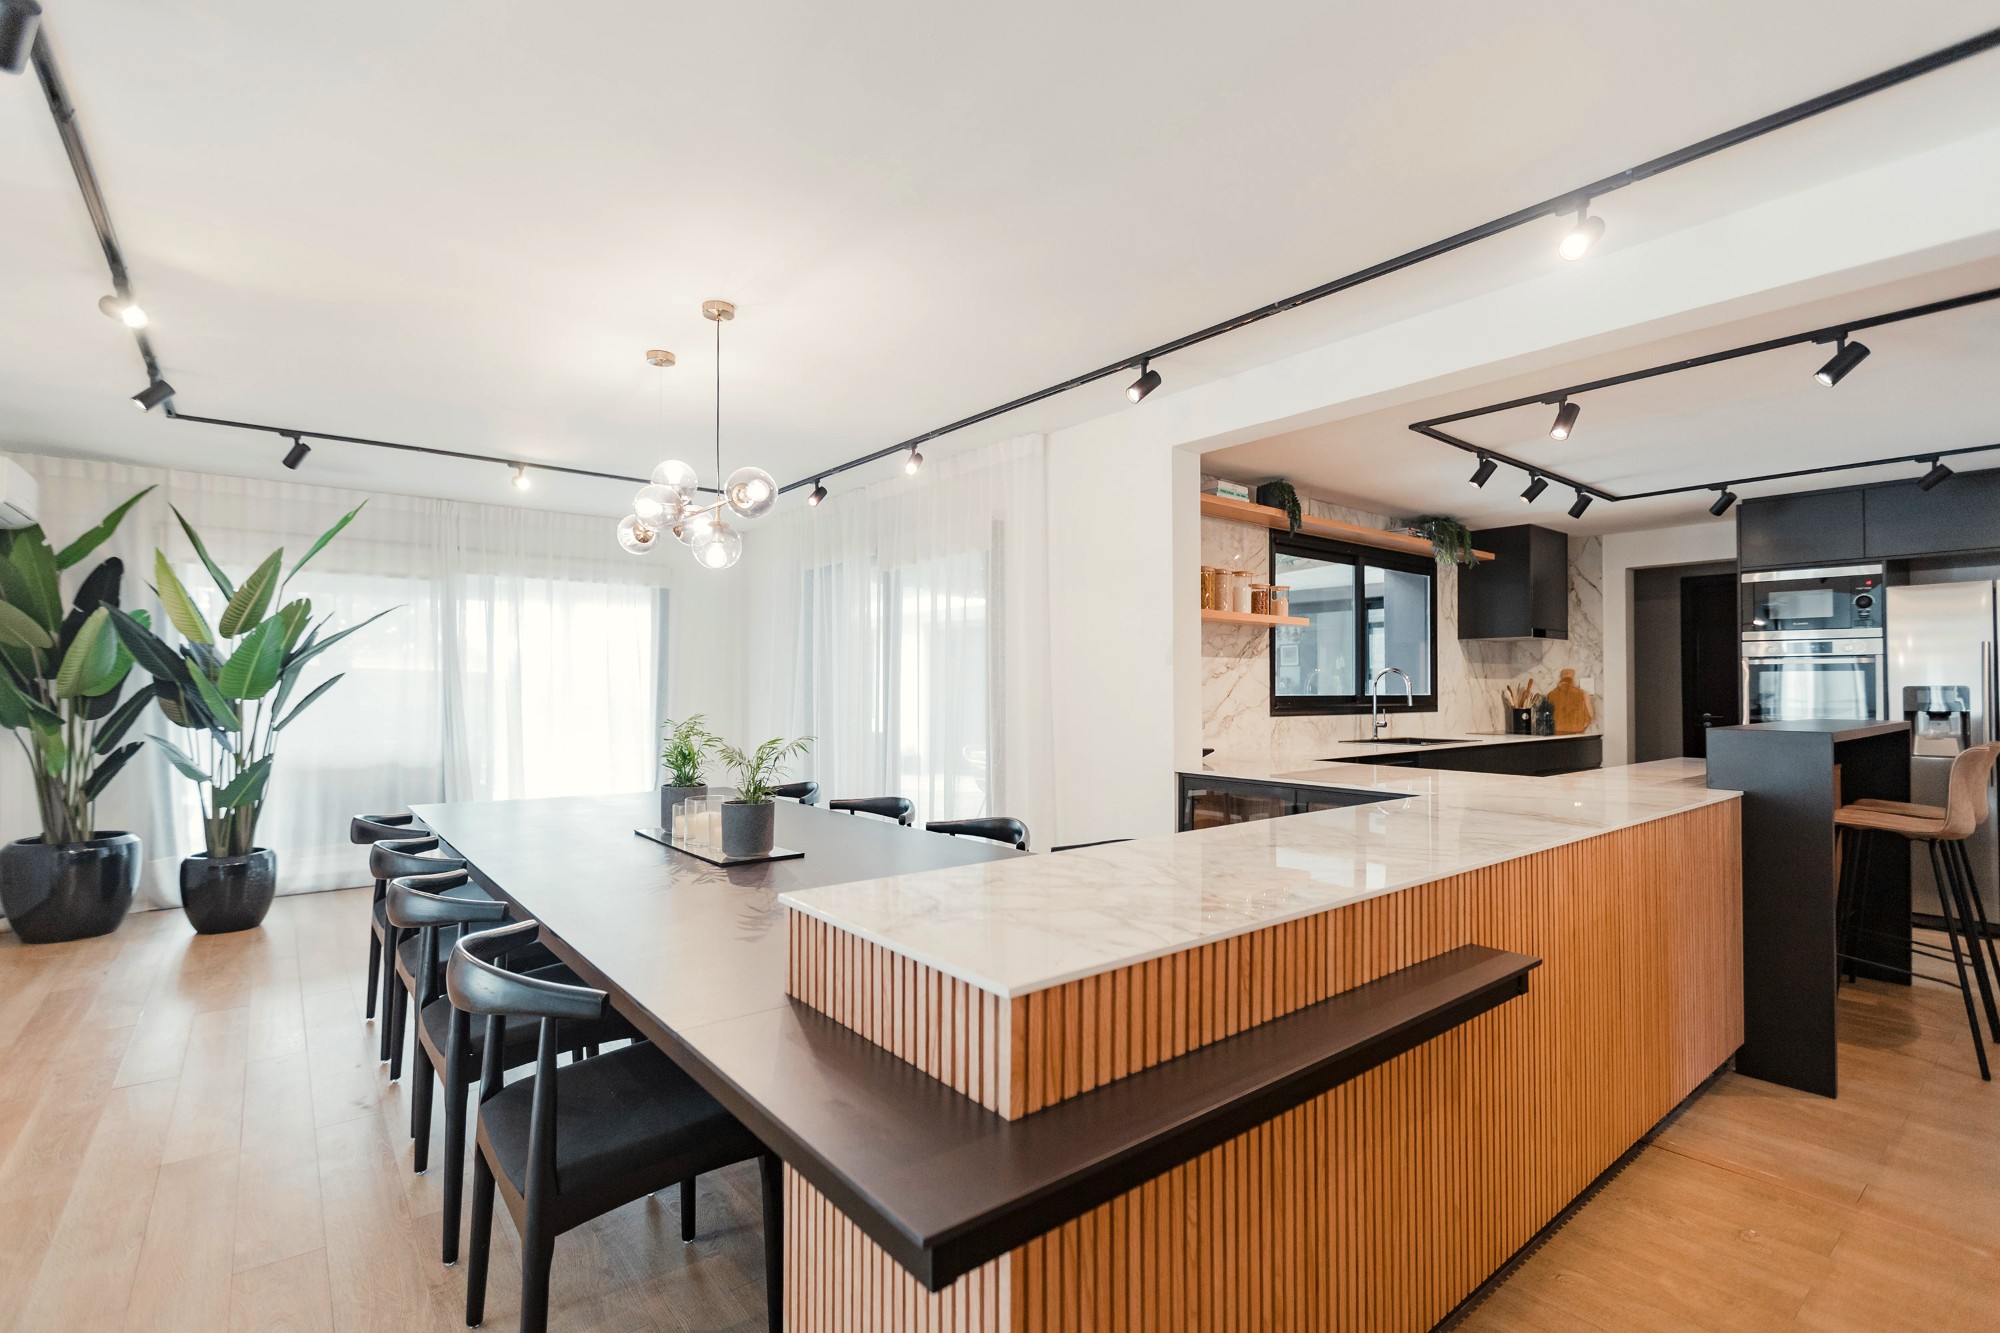 Bildnummer 20 des aktuellen Abschnitts von Kitchen and dining room merged by a precise design von Cosentino Deutschland